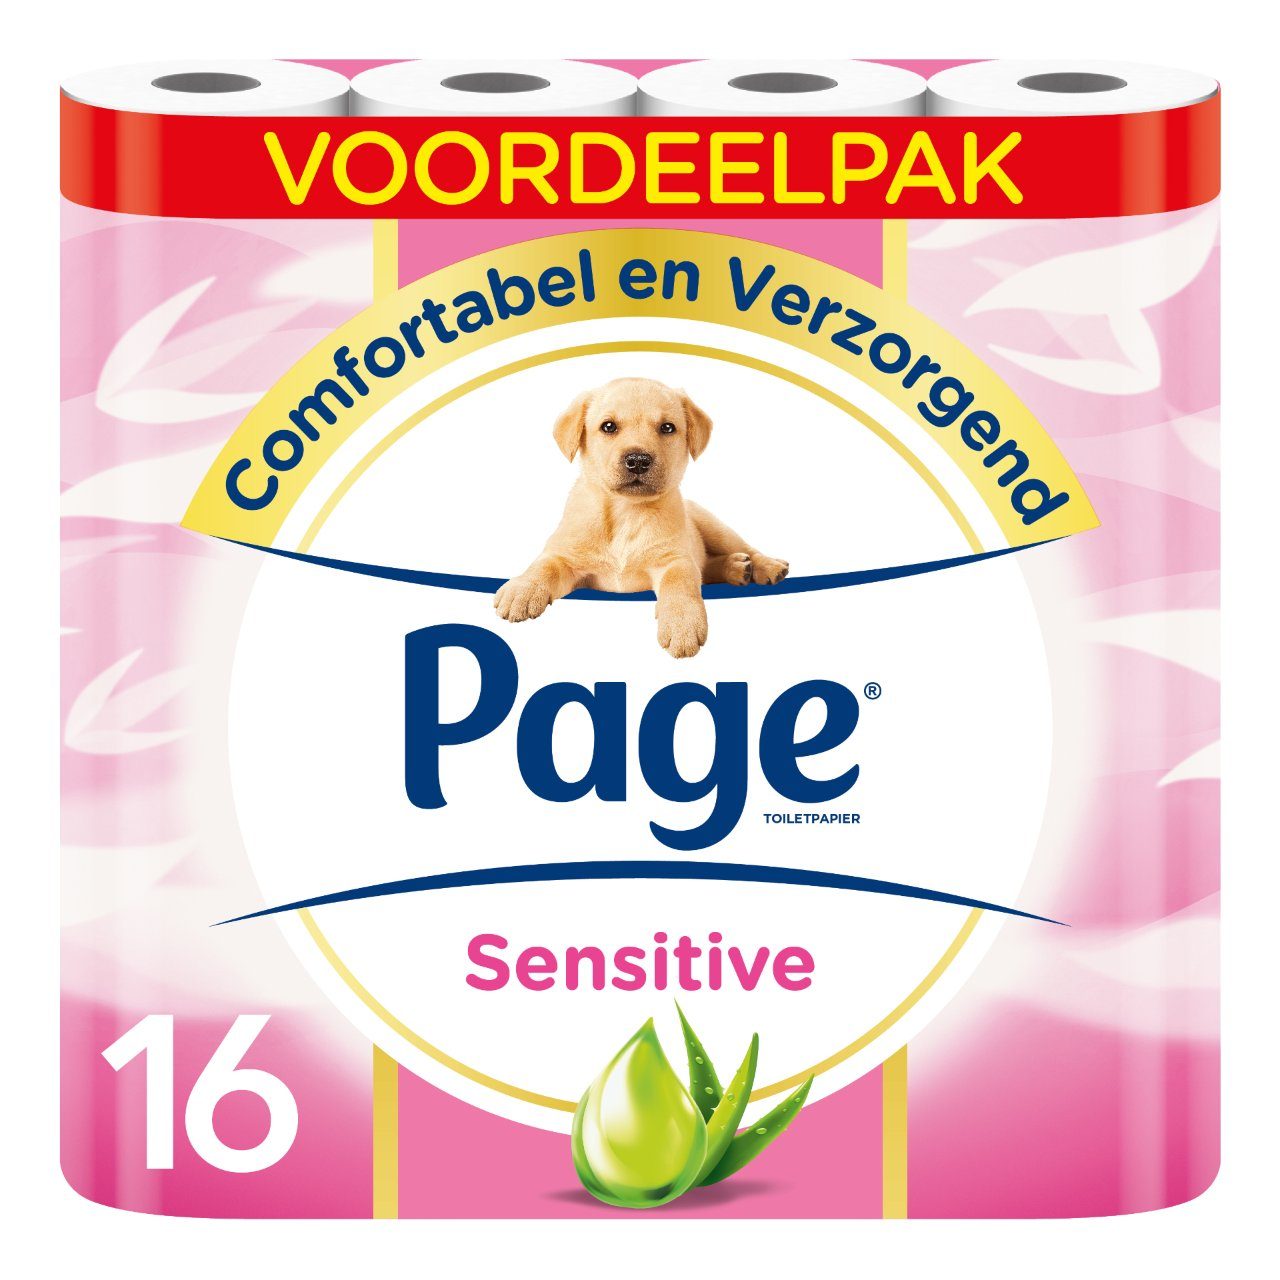 geschenk verzoek Verstrooien Page Toiletpapier sensitive Zak 16 rollen | Sligro.nl